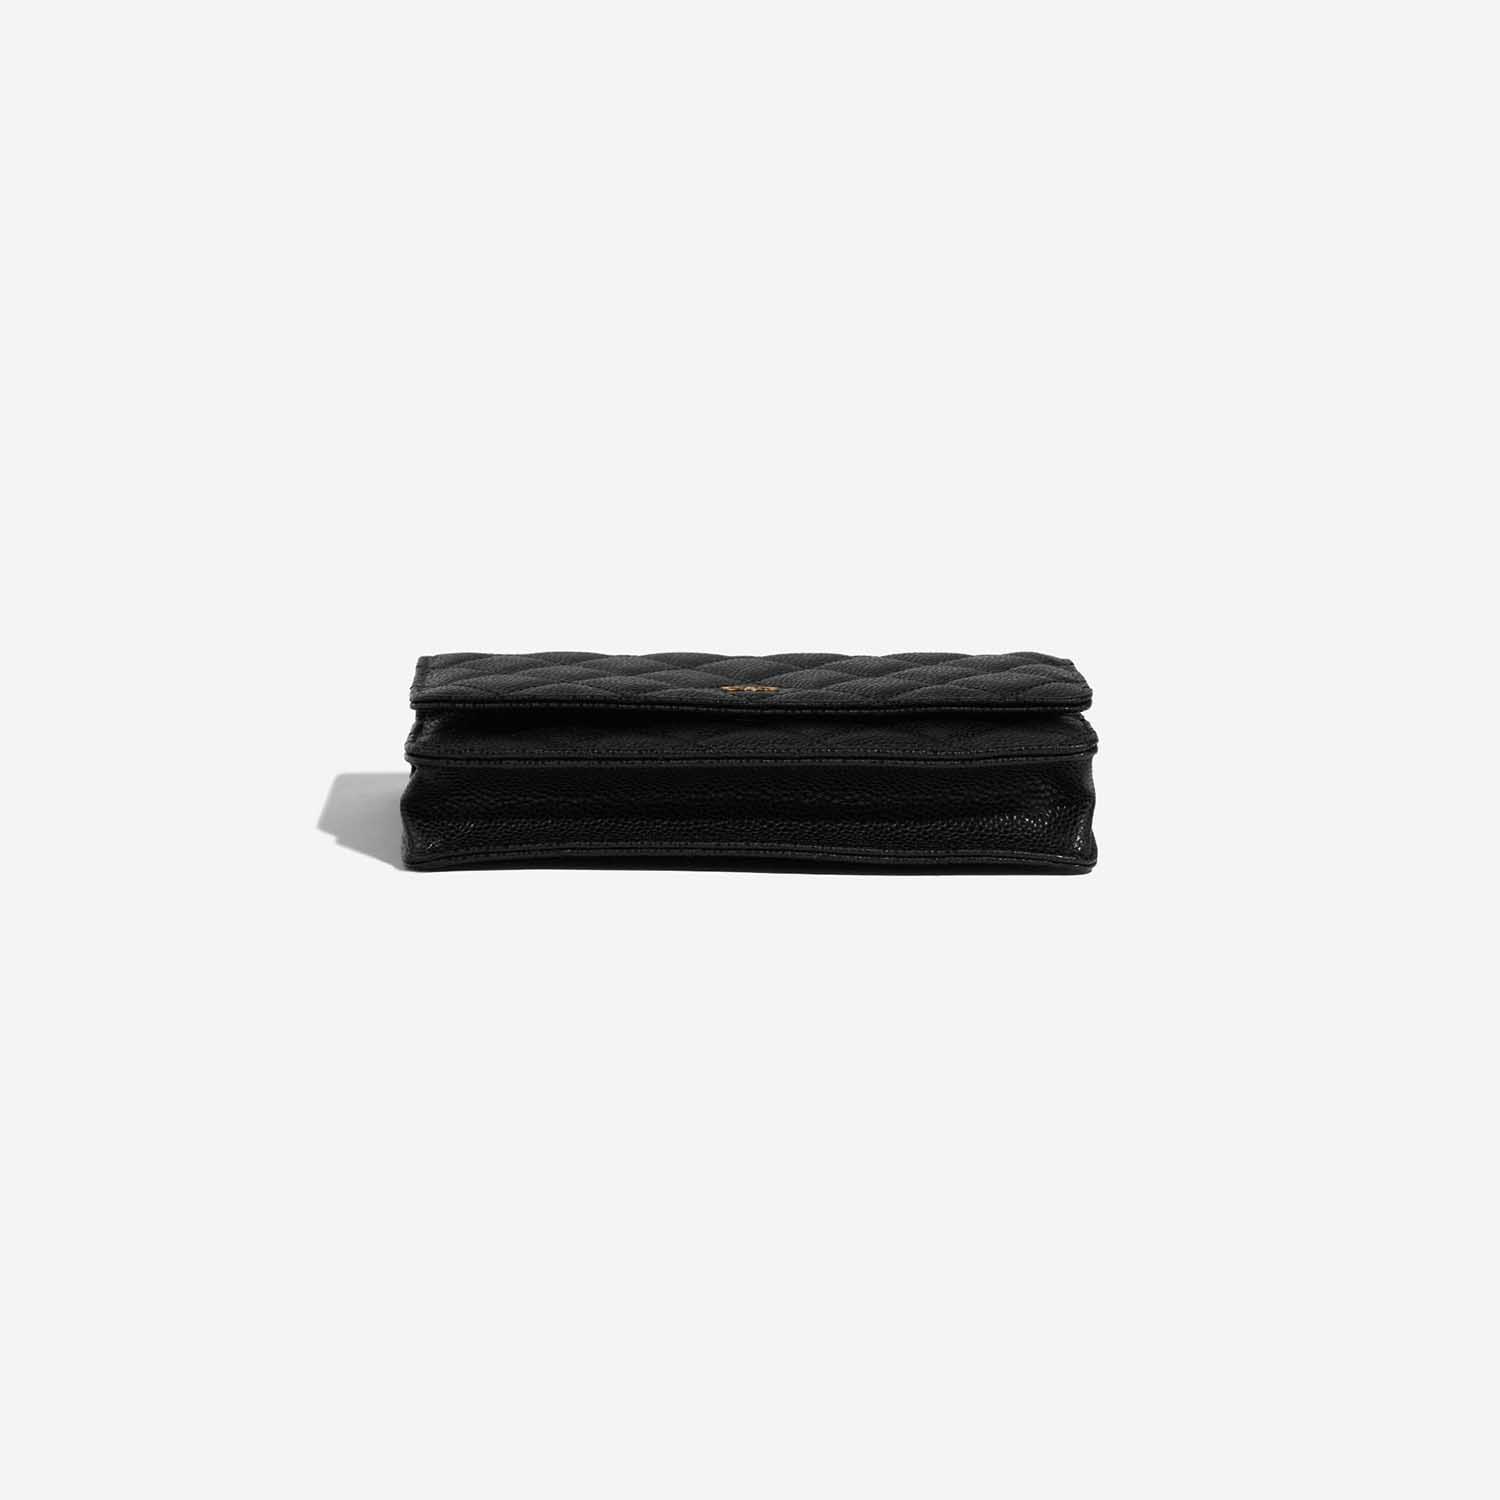 Pre-owned Chanel Tasche Timeless WOC Caviar-Leder Black Black Bottom | Verkaufen Sie Ihre Designer-Tasche auf Saclab.com